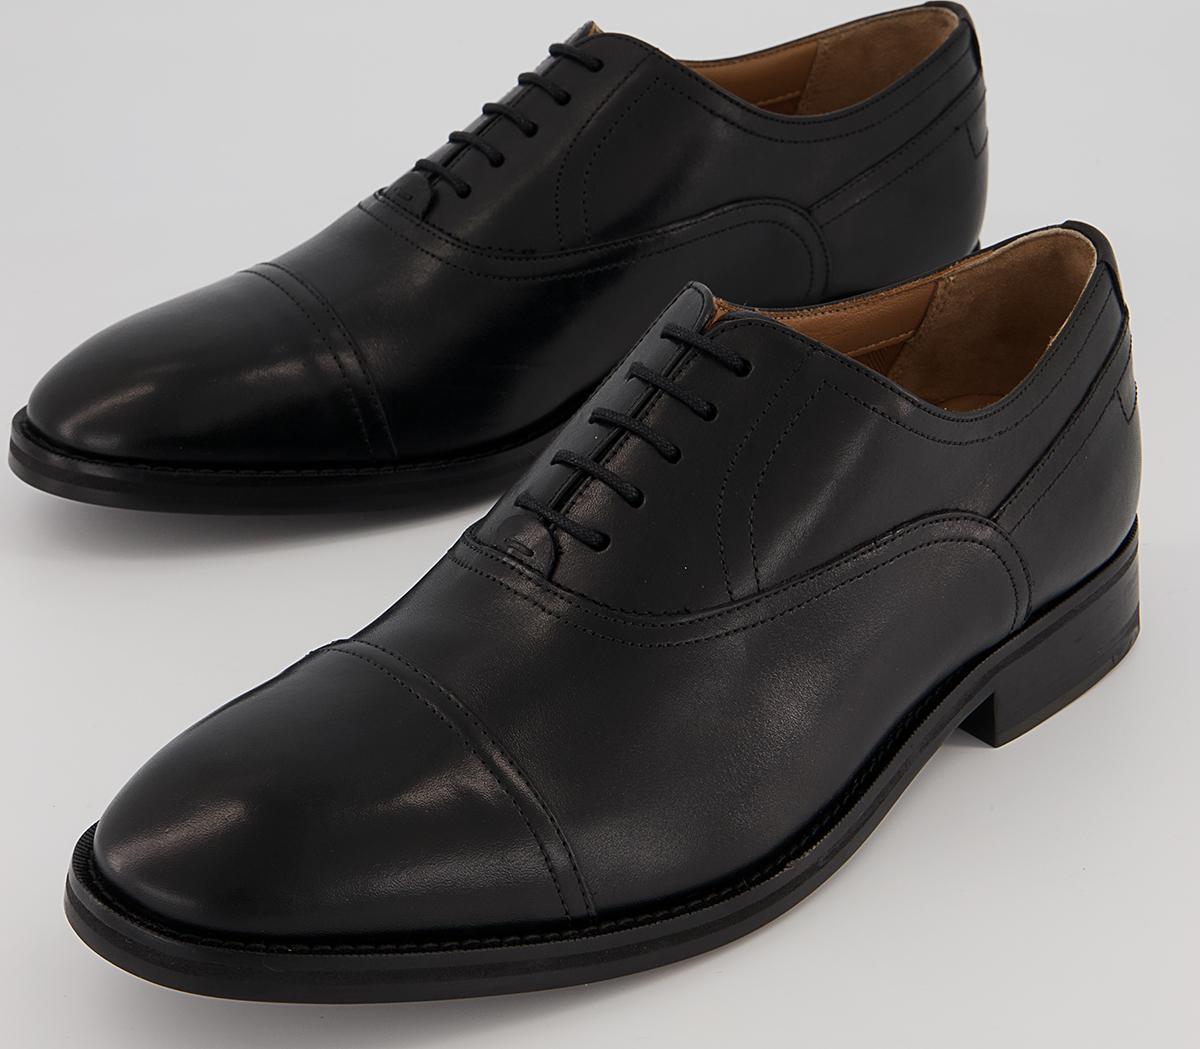 Ted Baker Carlen Oxford Shoes Black - Men’s Smart Shoes